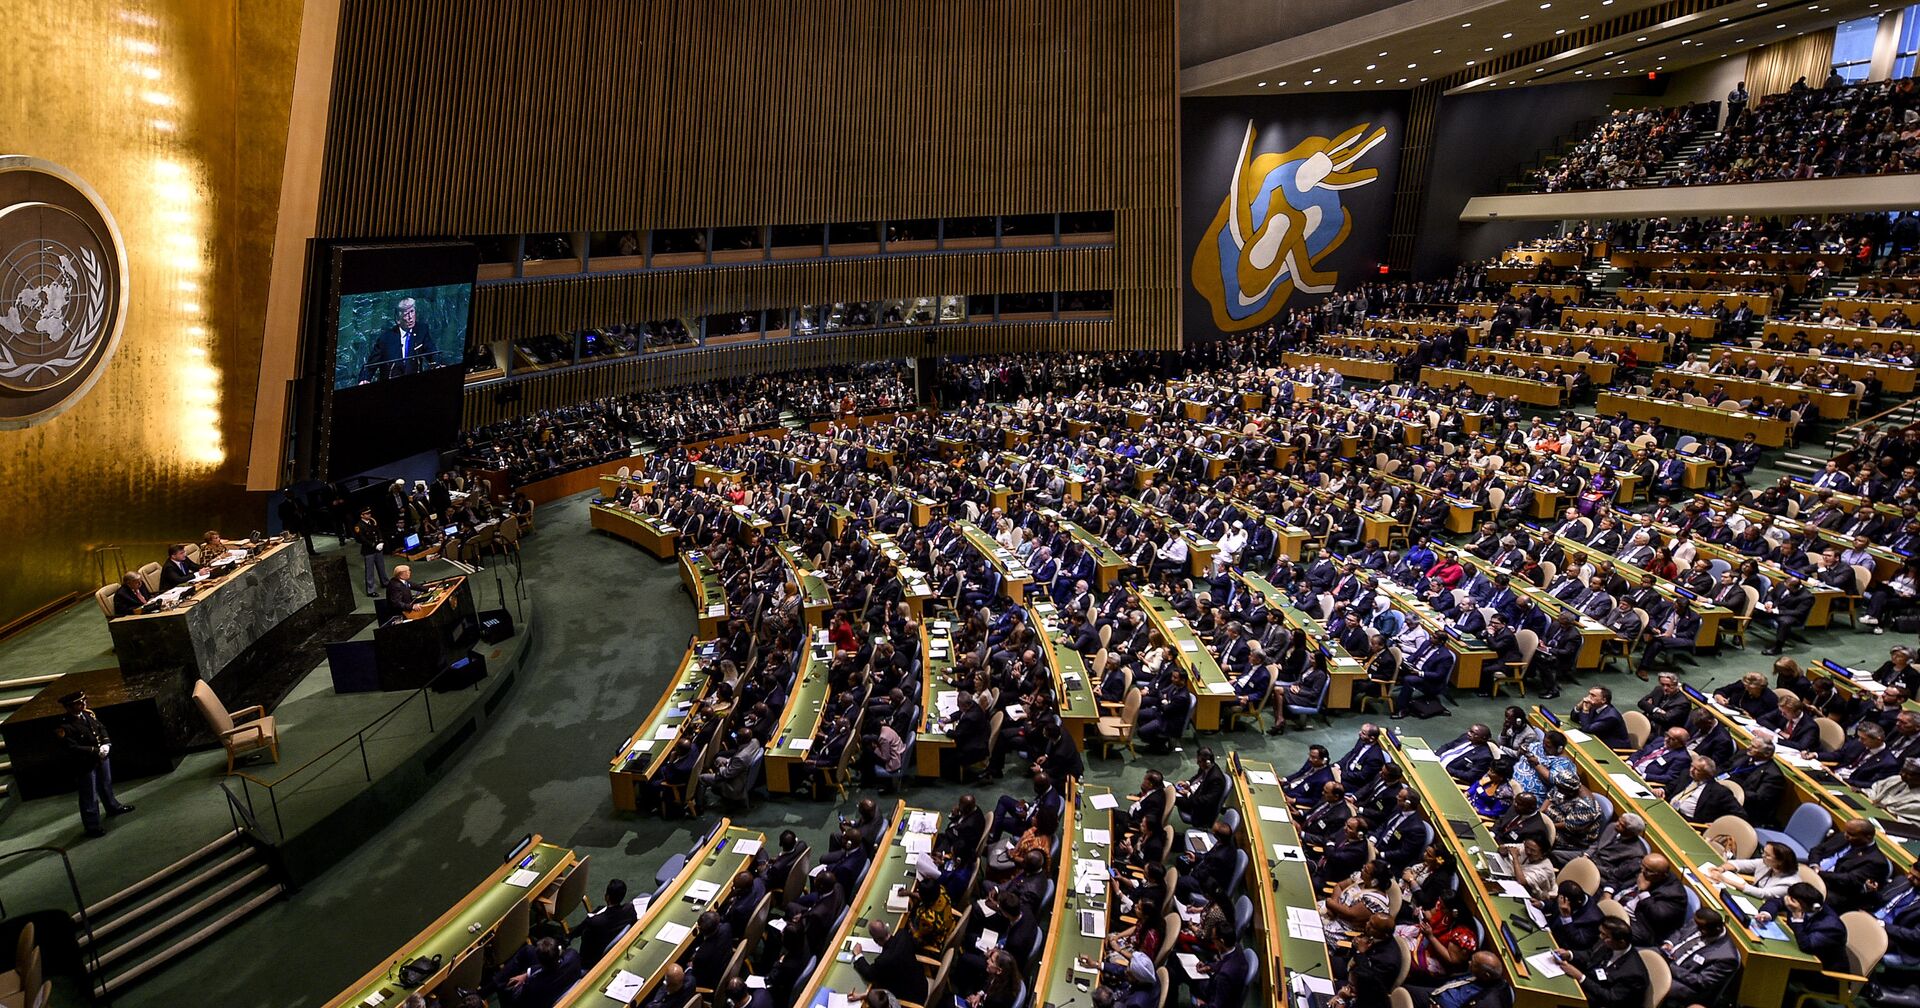 Заседание Генеральной Ассамблеи ООН в Нью-Йорке. 19 сентября 2017 - ИноСМИ, 1920, 14.10.2020